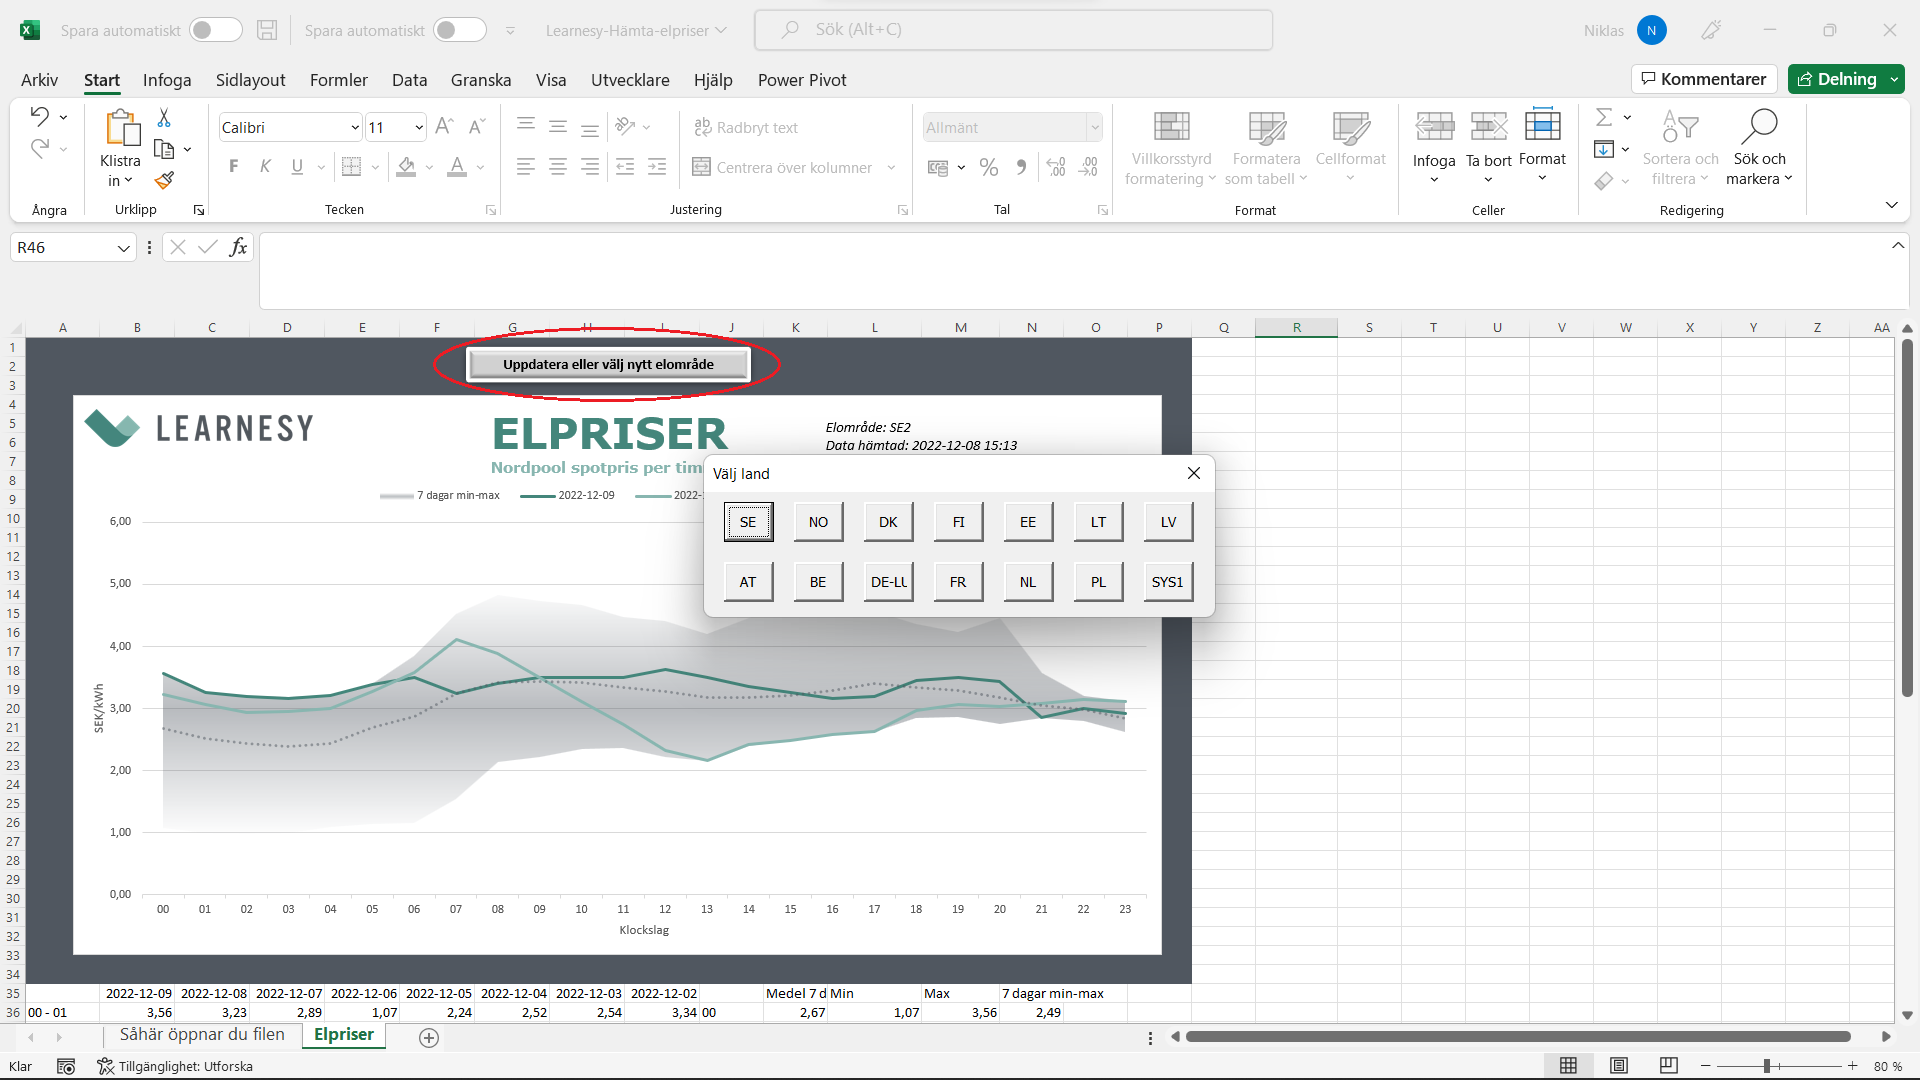 Bilden visar det Excel-dokument som används för att få de senaste elpriserna